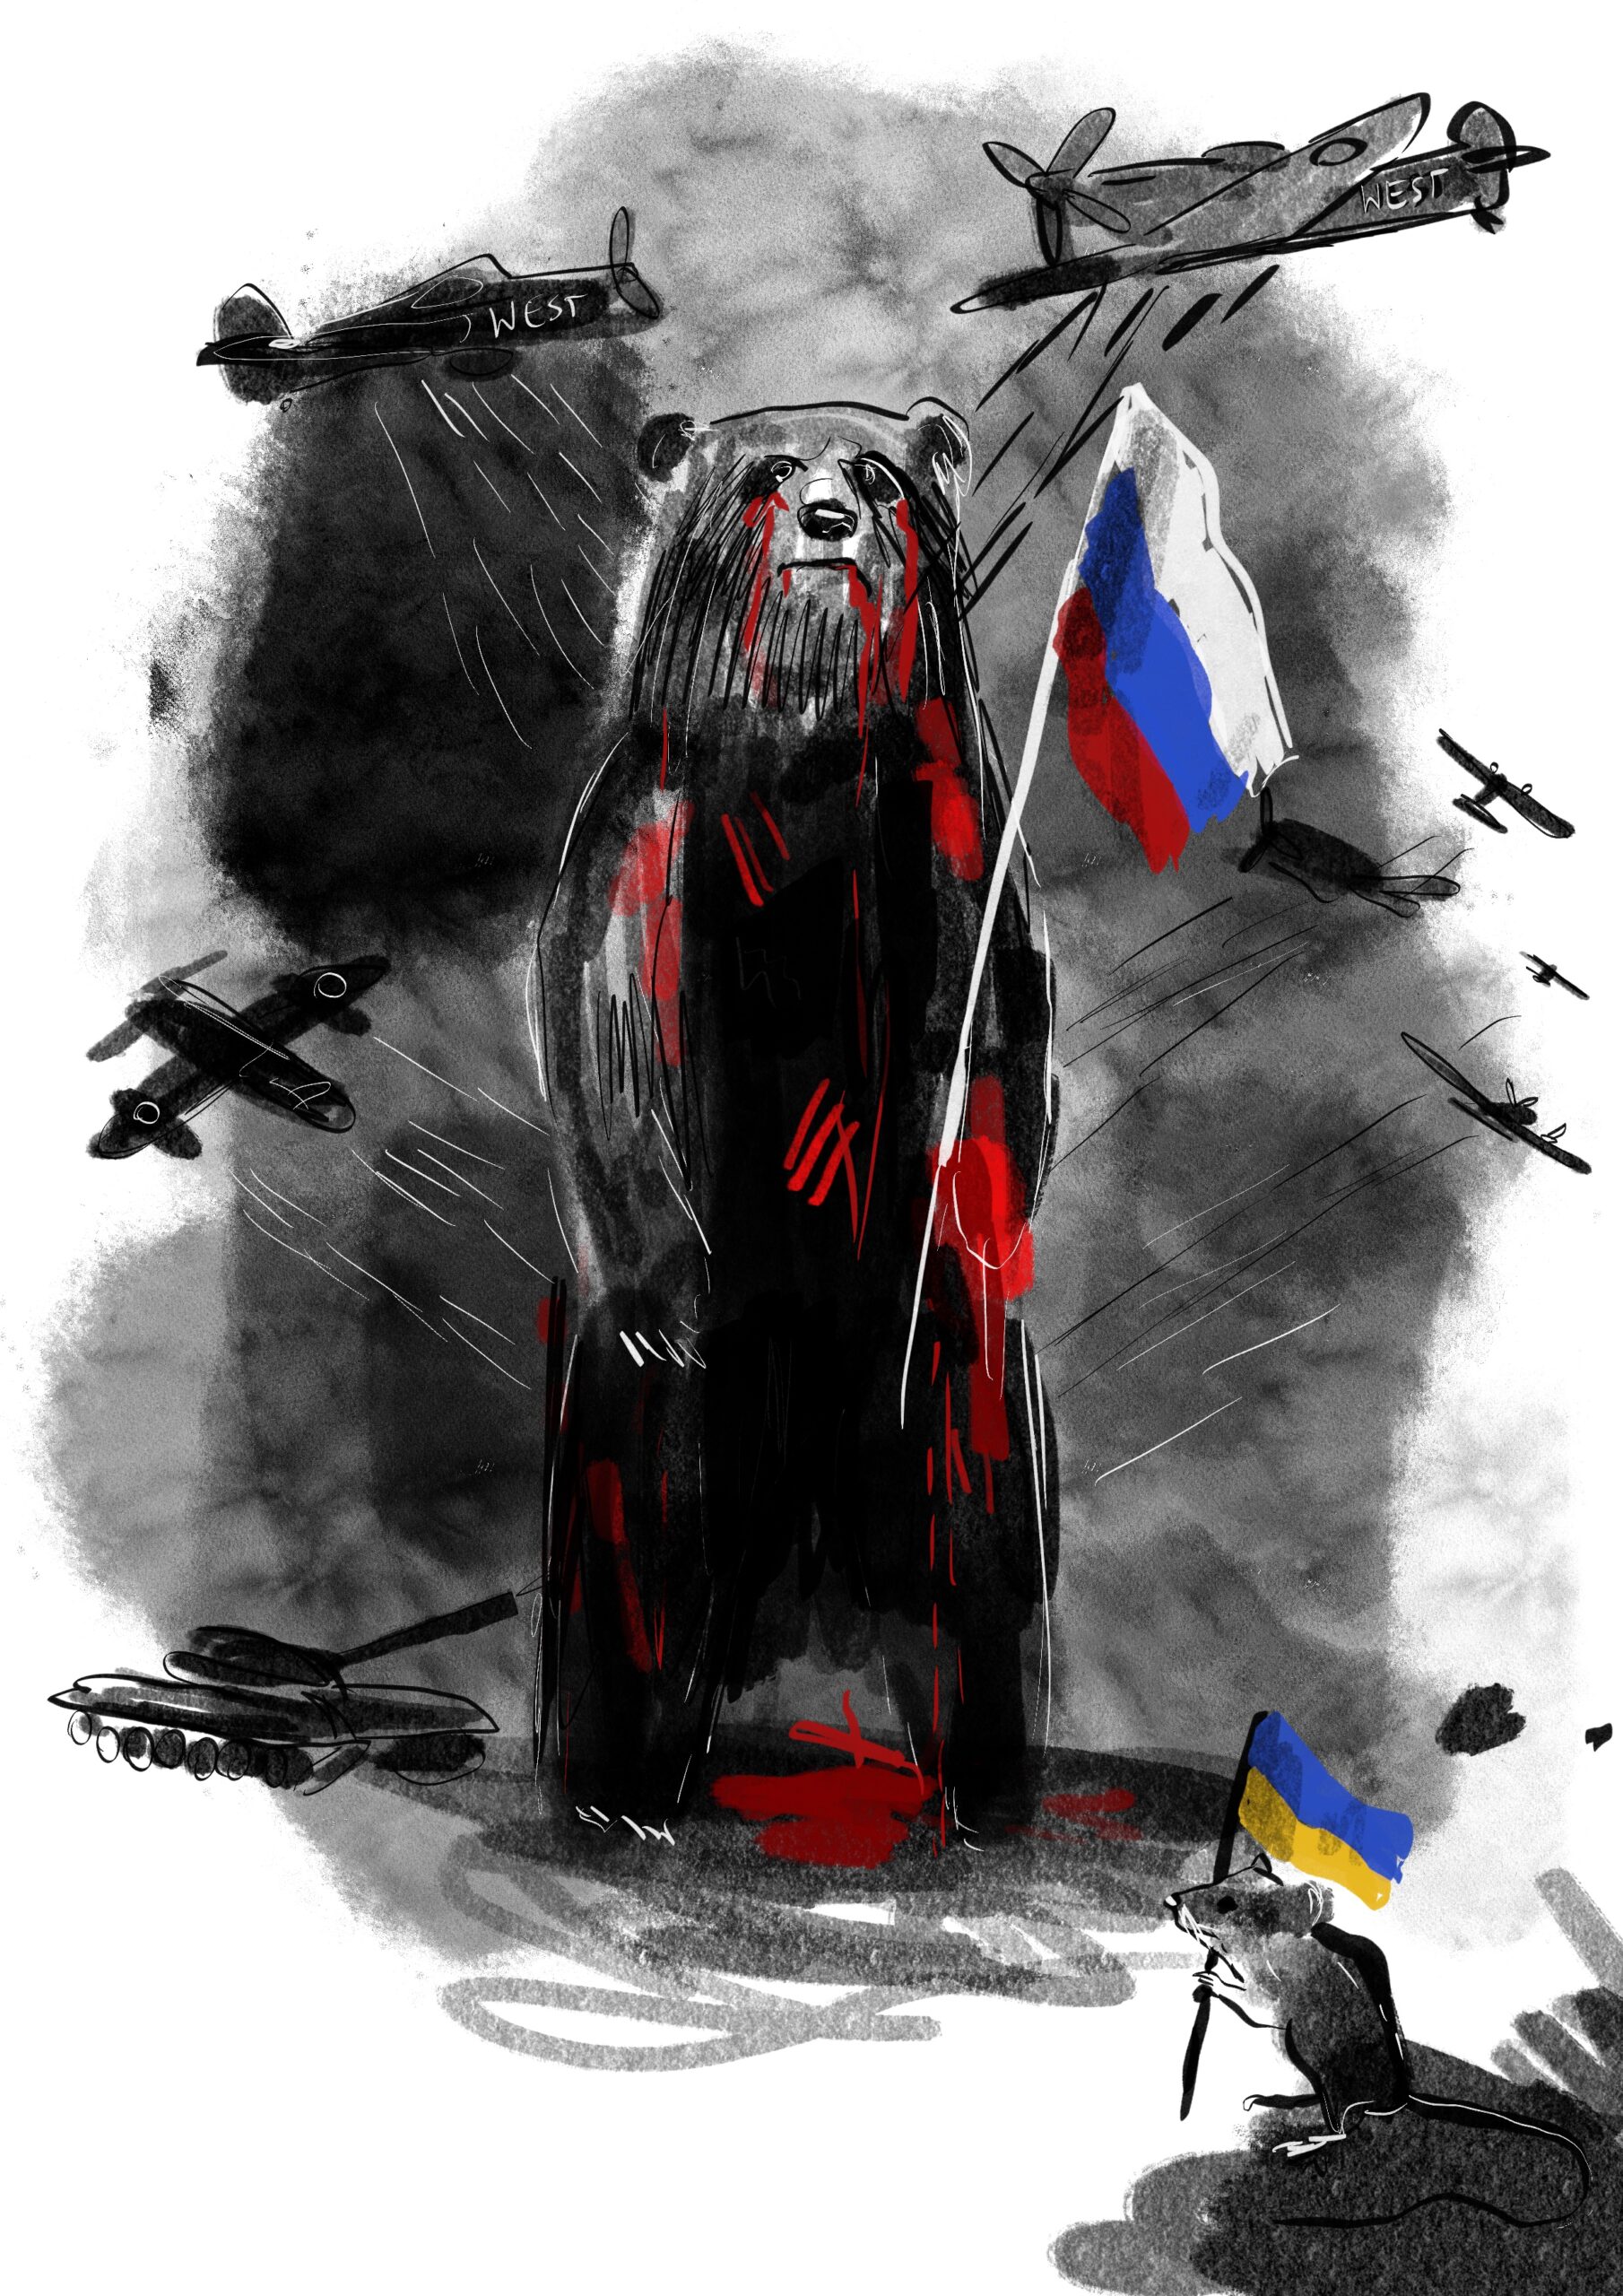 Niedźwiedź w natarciu czyli  dalszy ciąg wojny rosyjsko-ukraińskiej